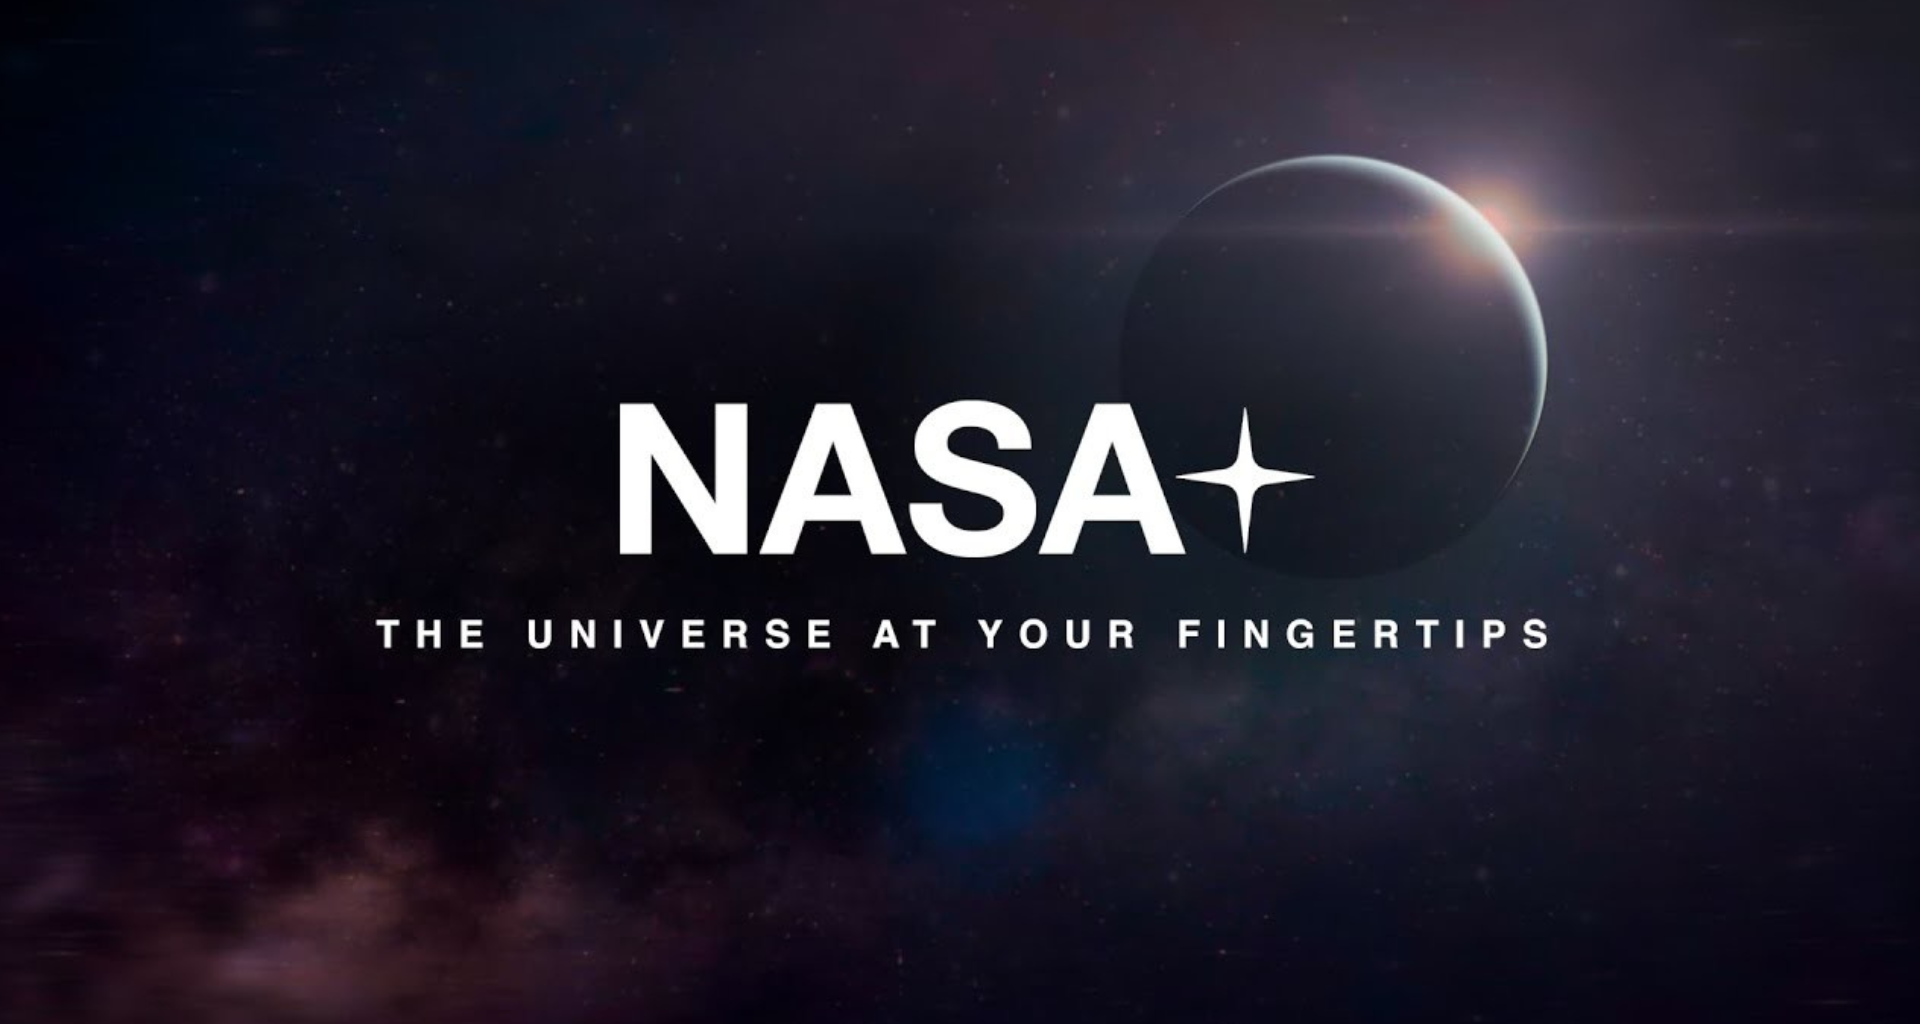 Nasa+: agência espacial anuncia serviço de streaming gratuito. Com a renovação de seu site e aplicativo, será possível acessar os conteúdos na palma da mão e ficar atualizado sobre todas as descobertas